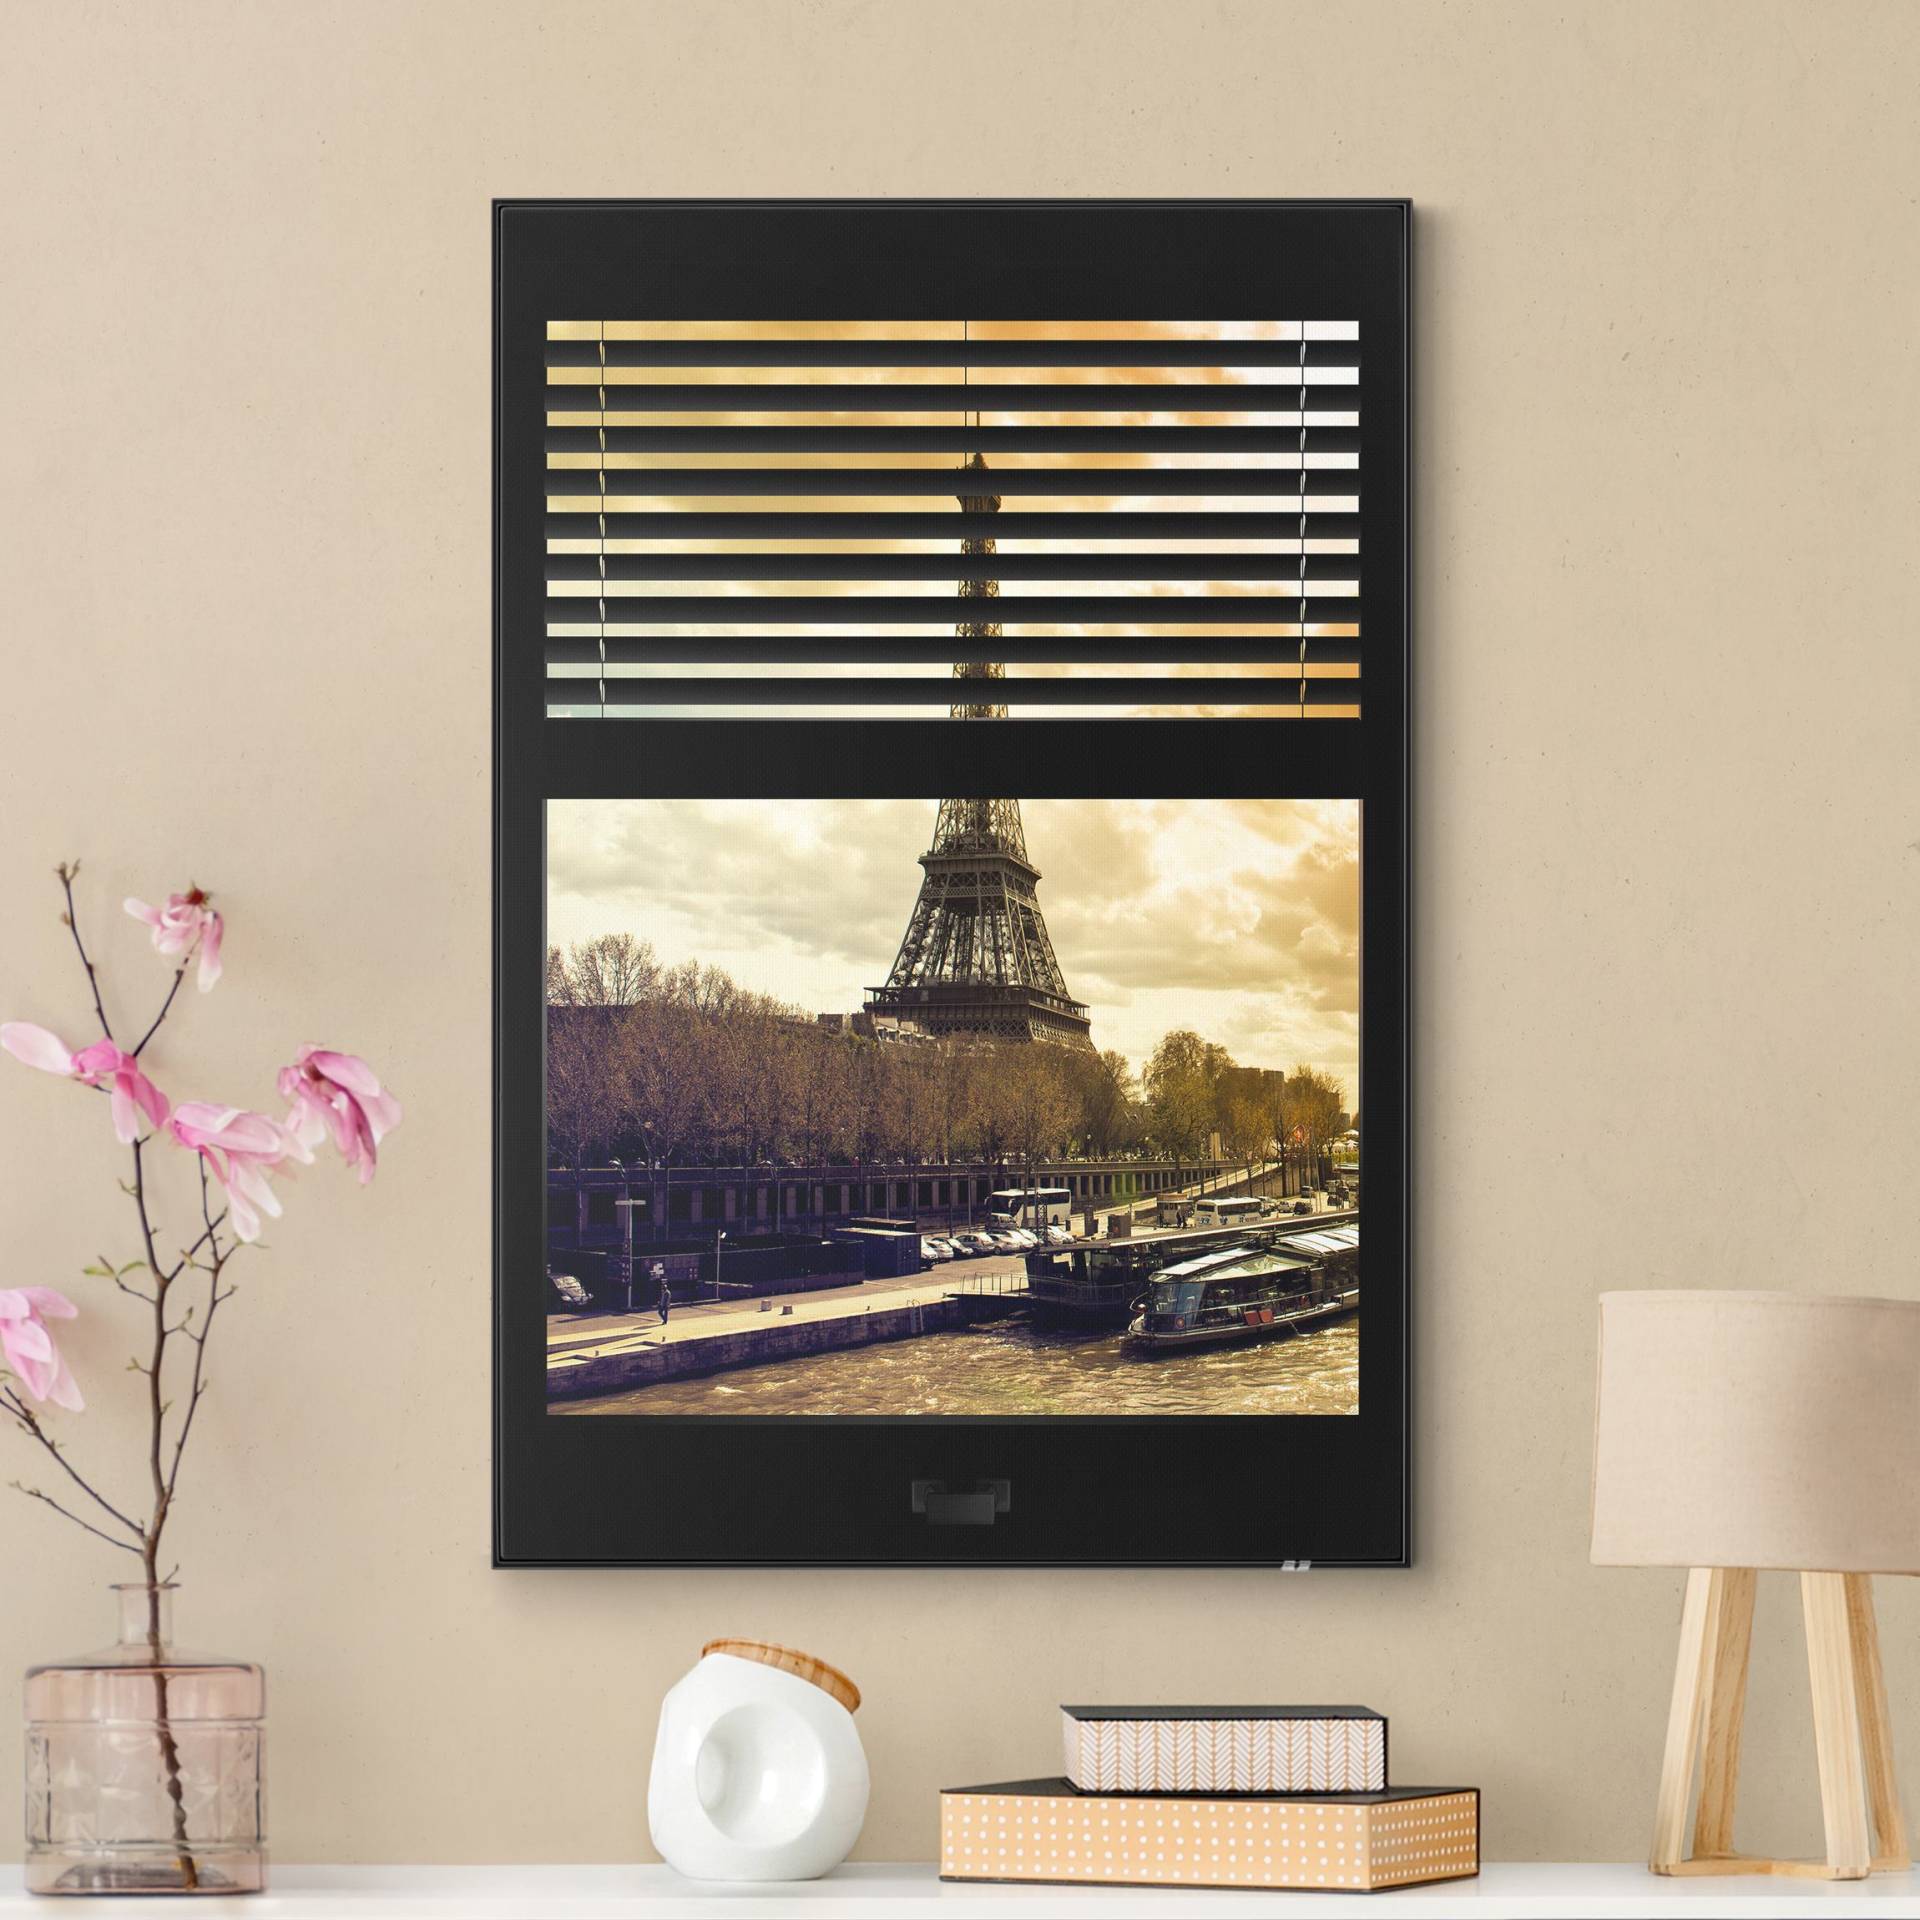 Wechselbild Fensterausblick Jalousie - Paris Eiffelturm Sonnenuntergang von Klebefieber